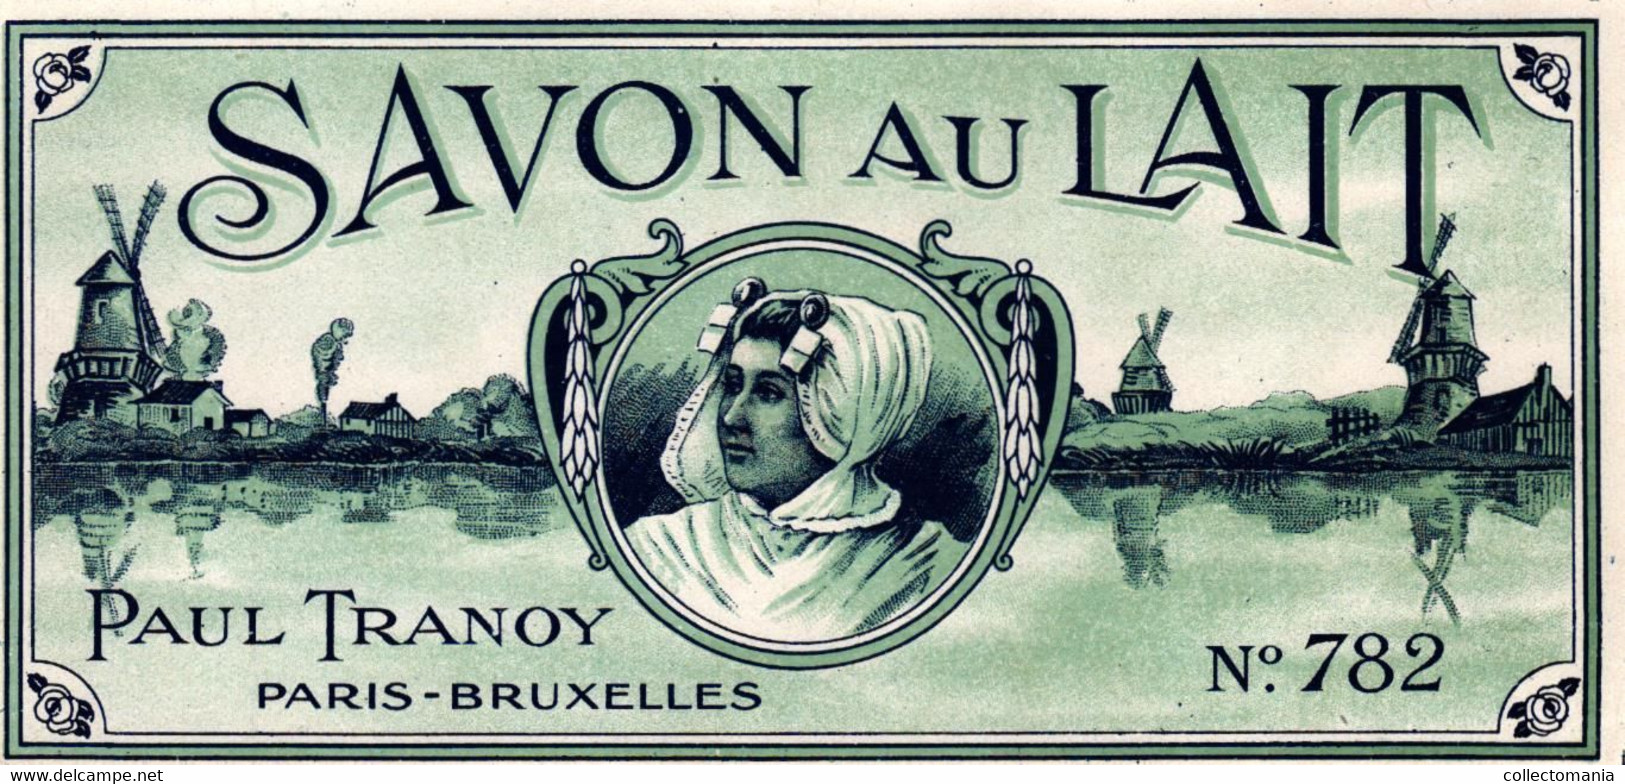 7 Etiquettes de Savon Miradol Lefeuvre Violette de Parme Savon au Lait Paul Tranoy Savon des Bébés Gallin Martel